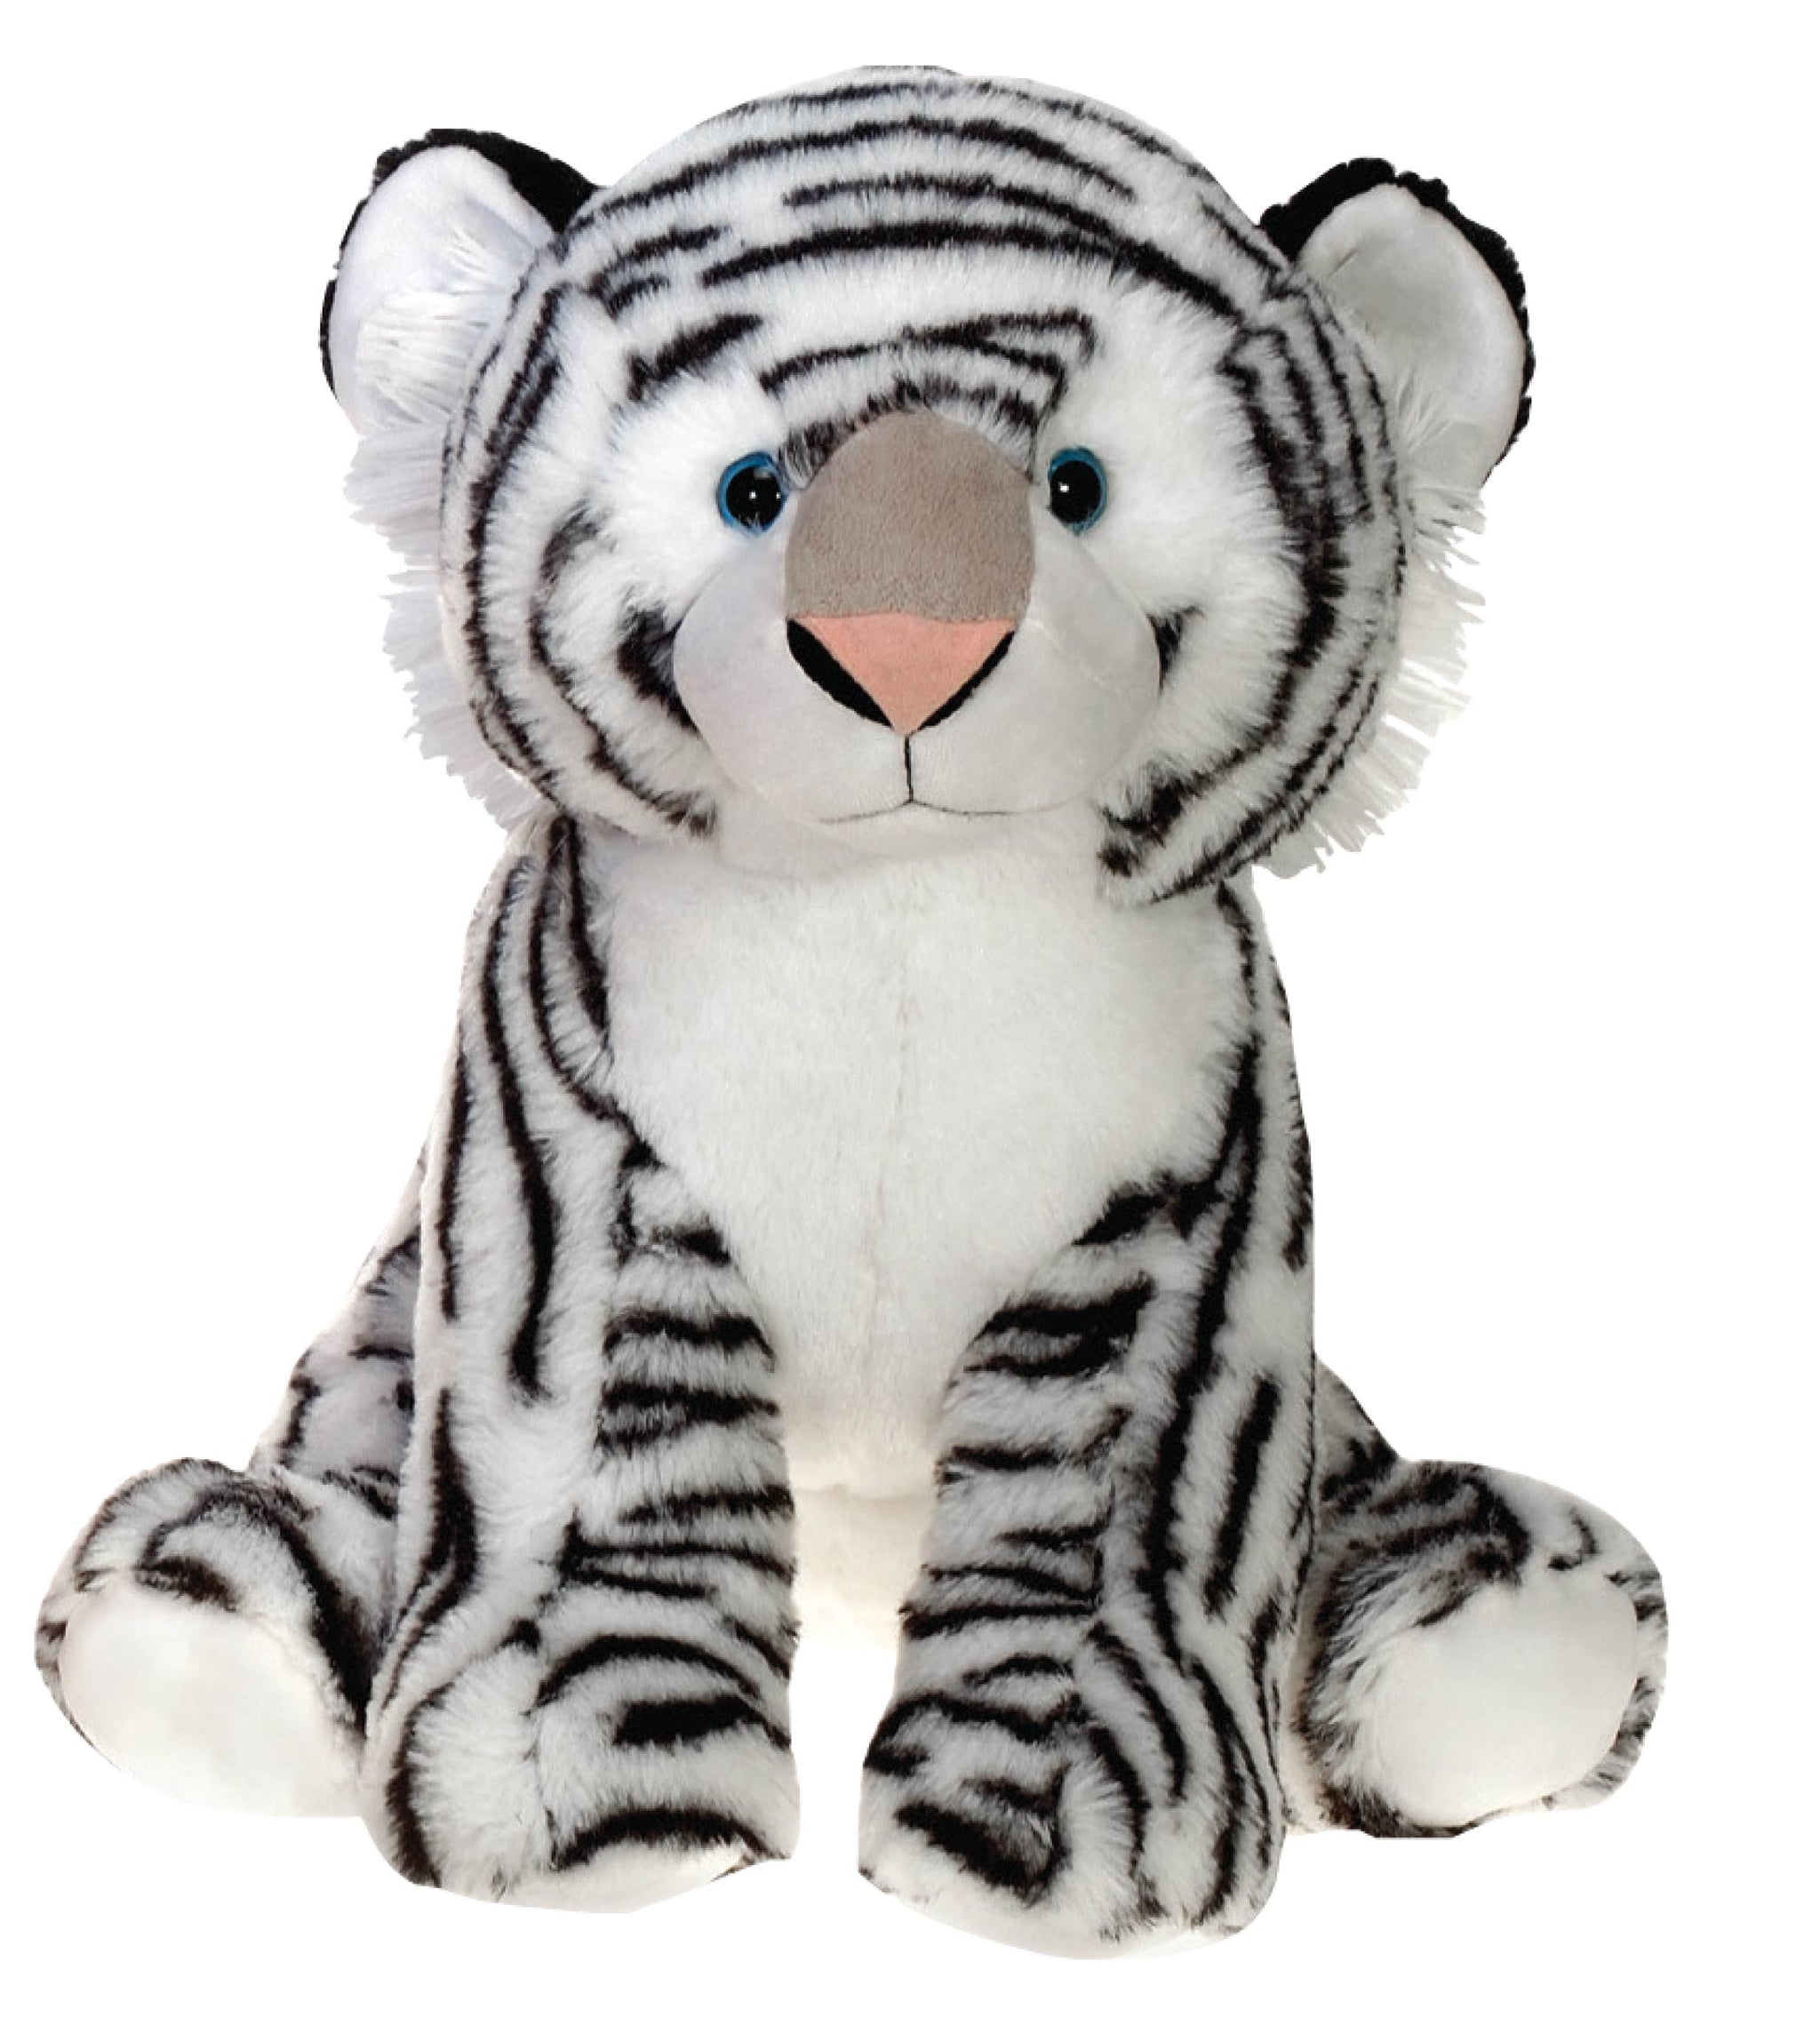 white tiger toy